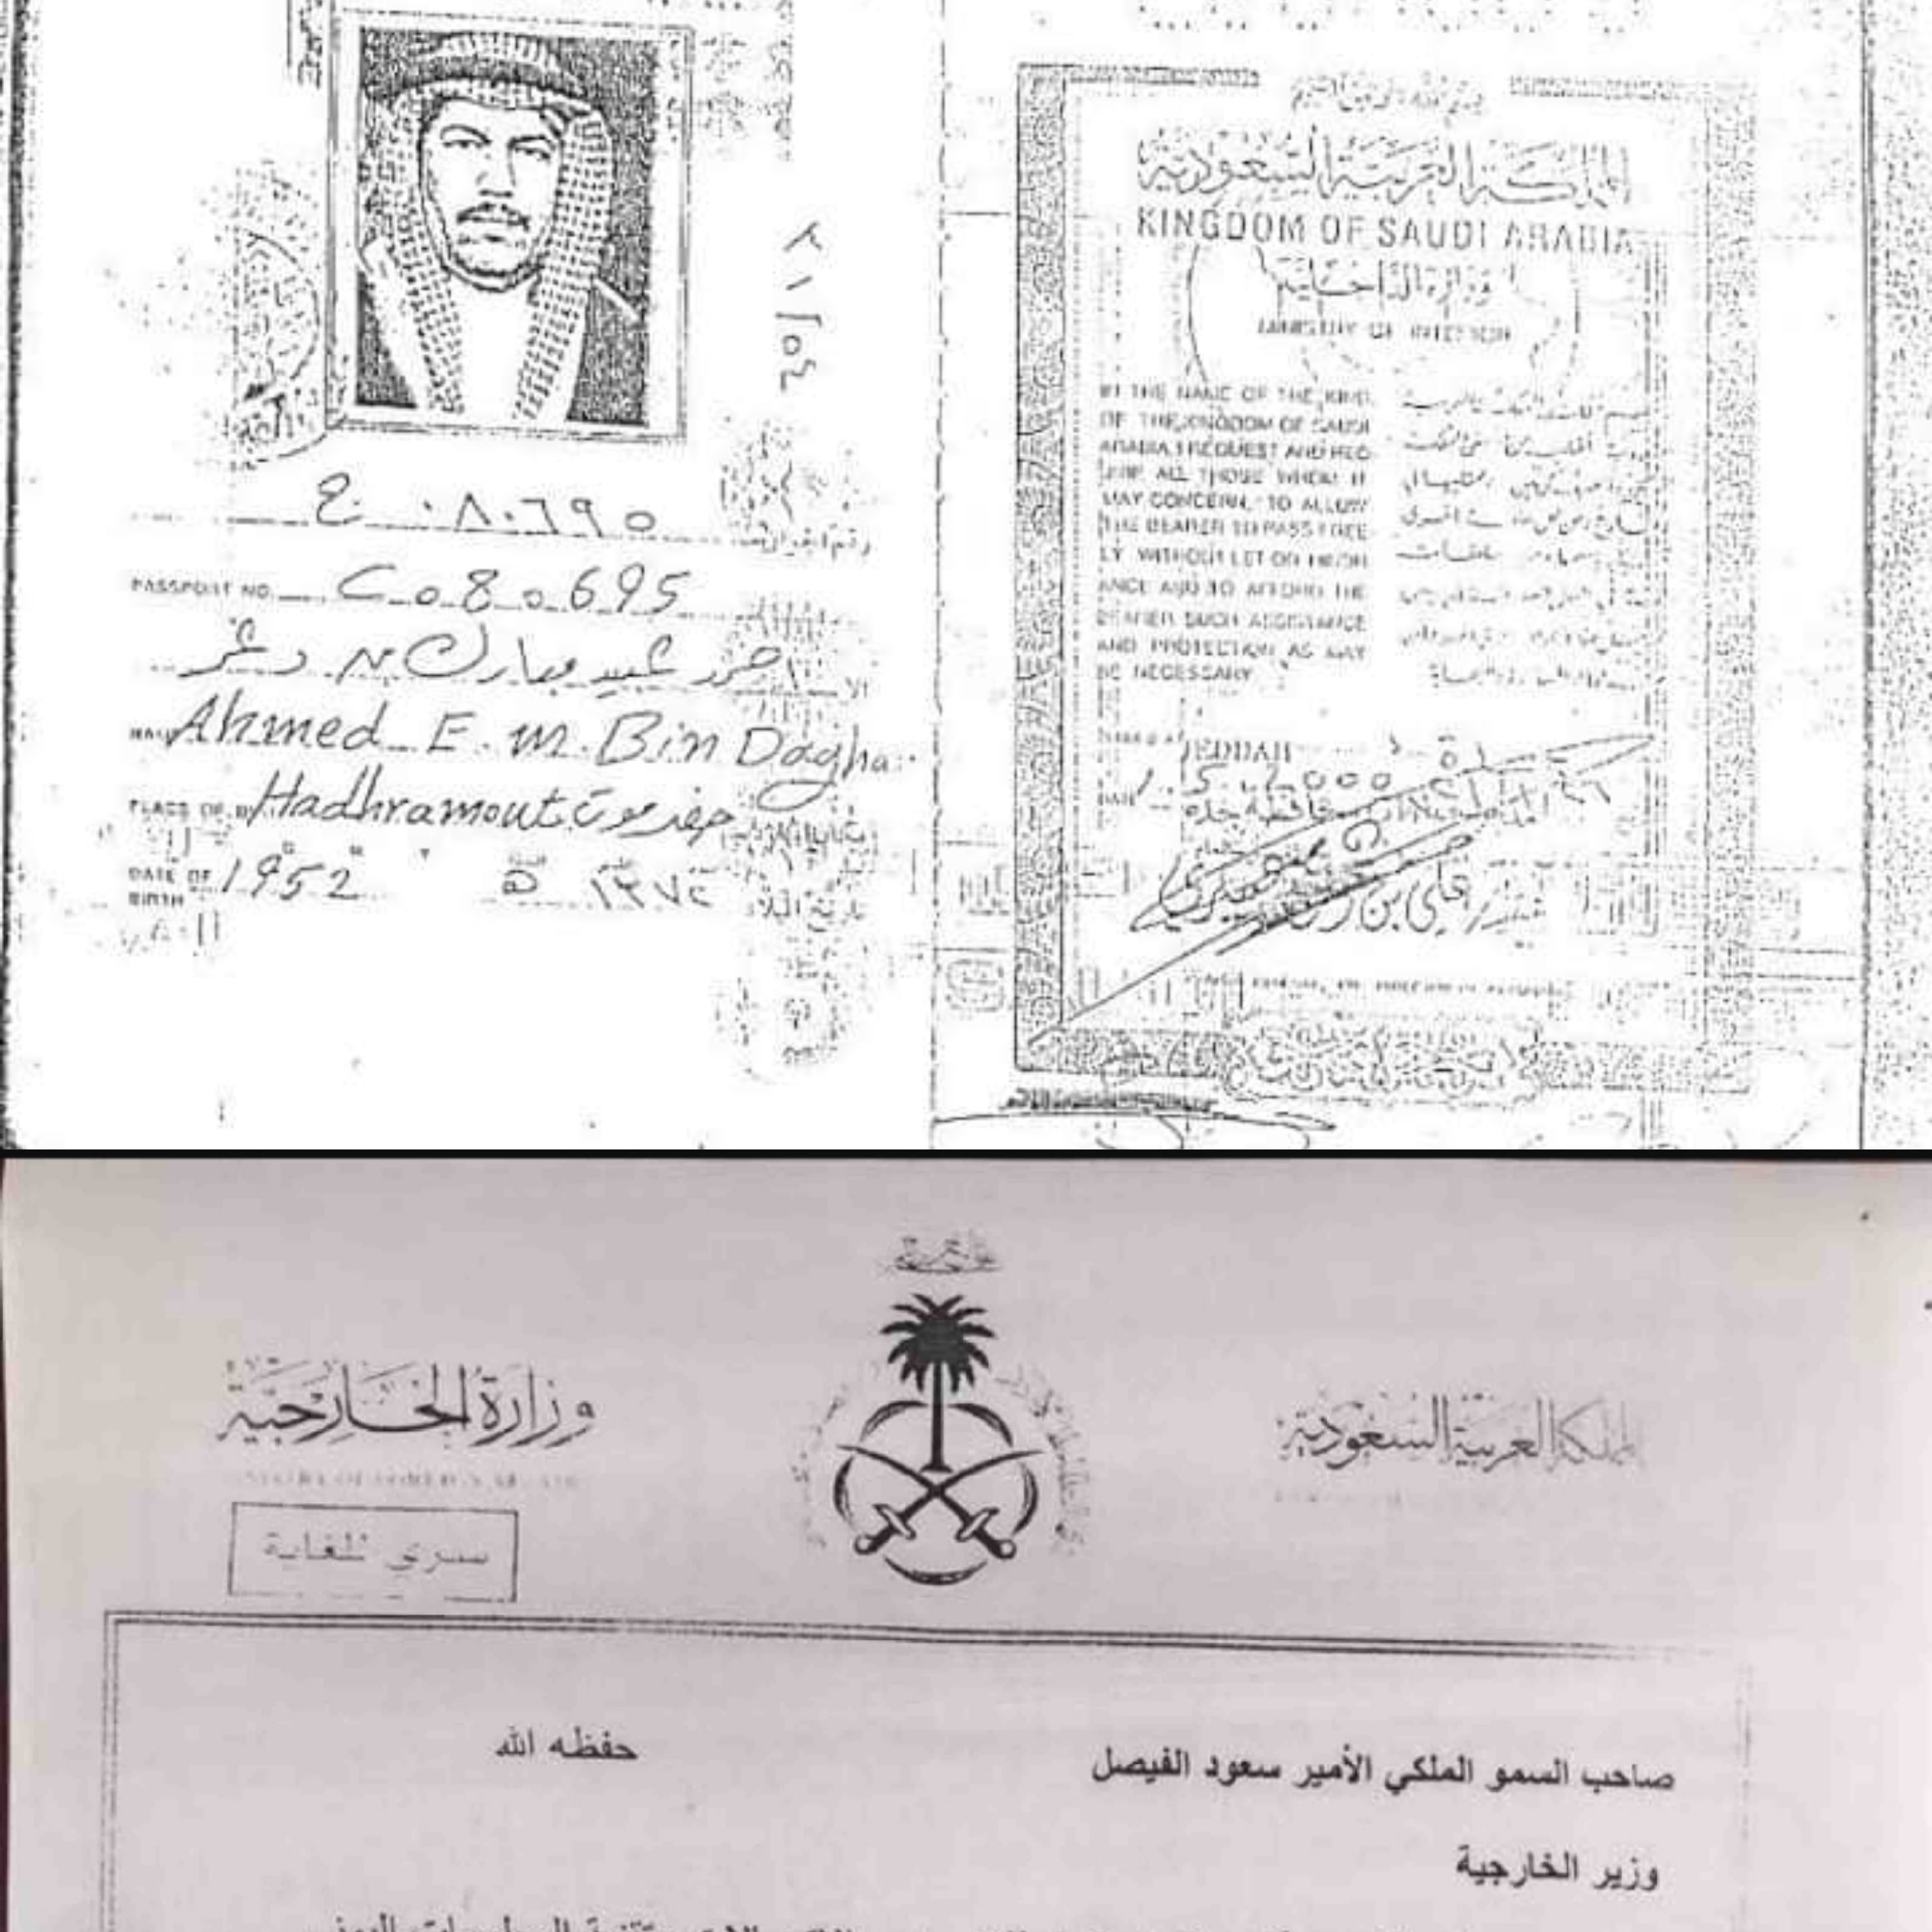 الرئيس اليمني المؤقت يسعود الدولة بن دغر والعليمي يحملان الجنسية السعودية وثائق